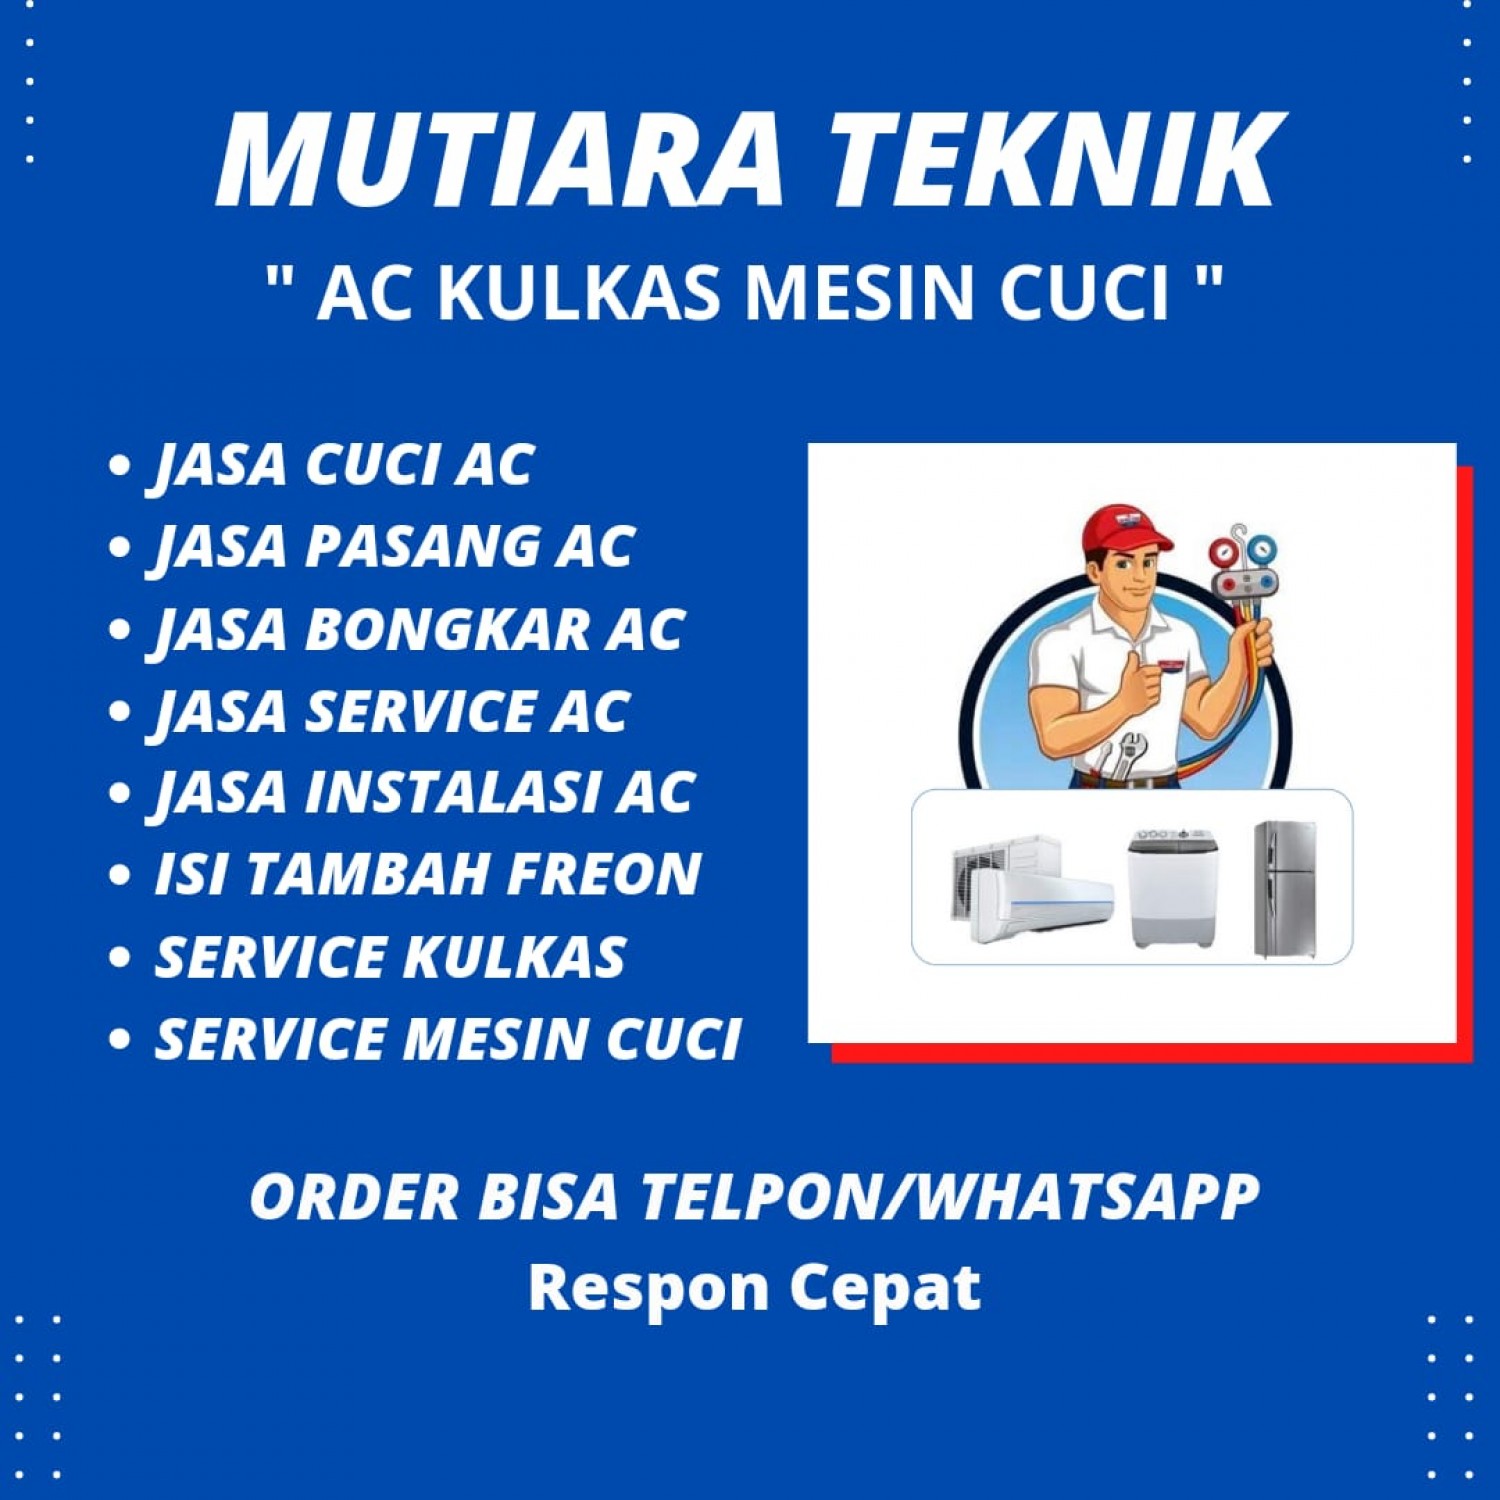 Service Mesin Cuci Bogor Utara Kota Bogor 081298830333